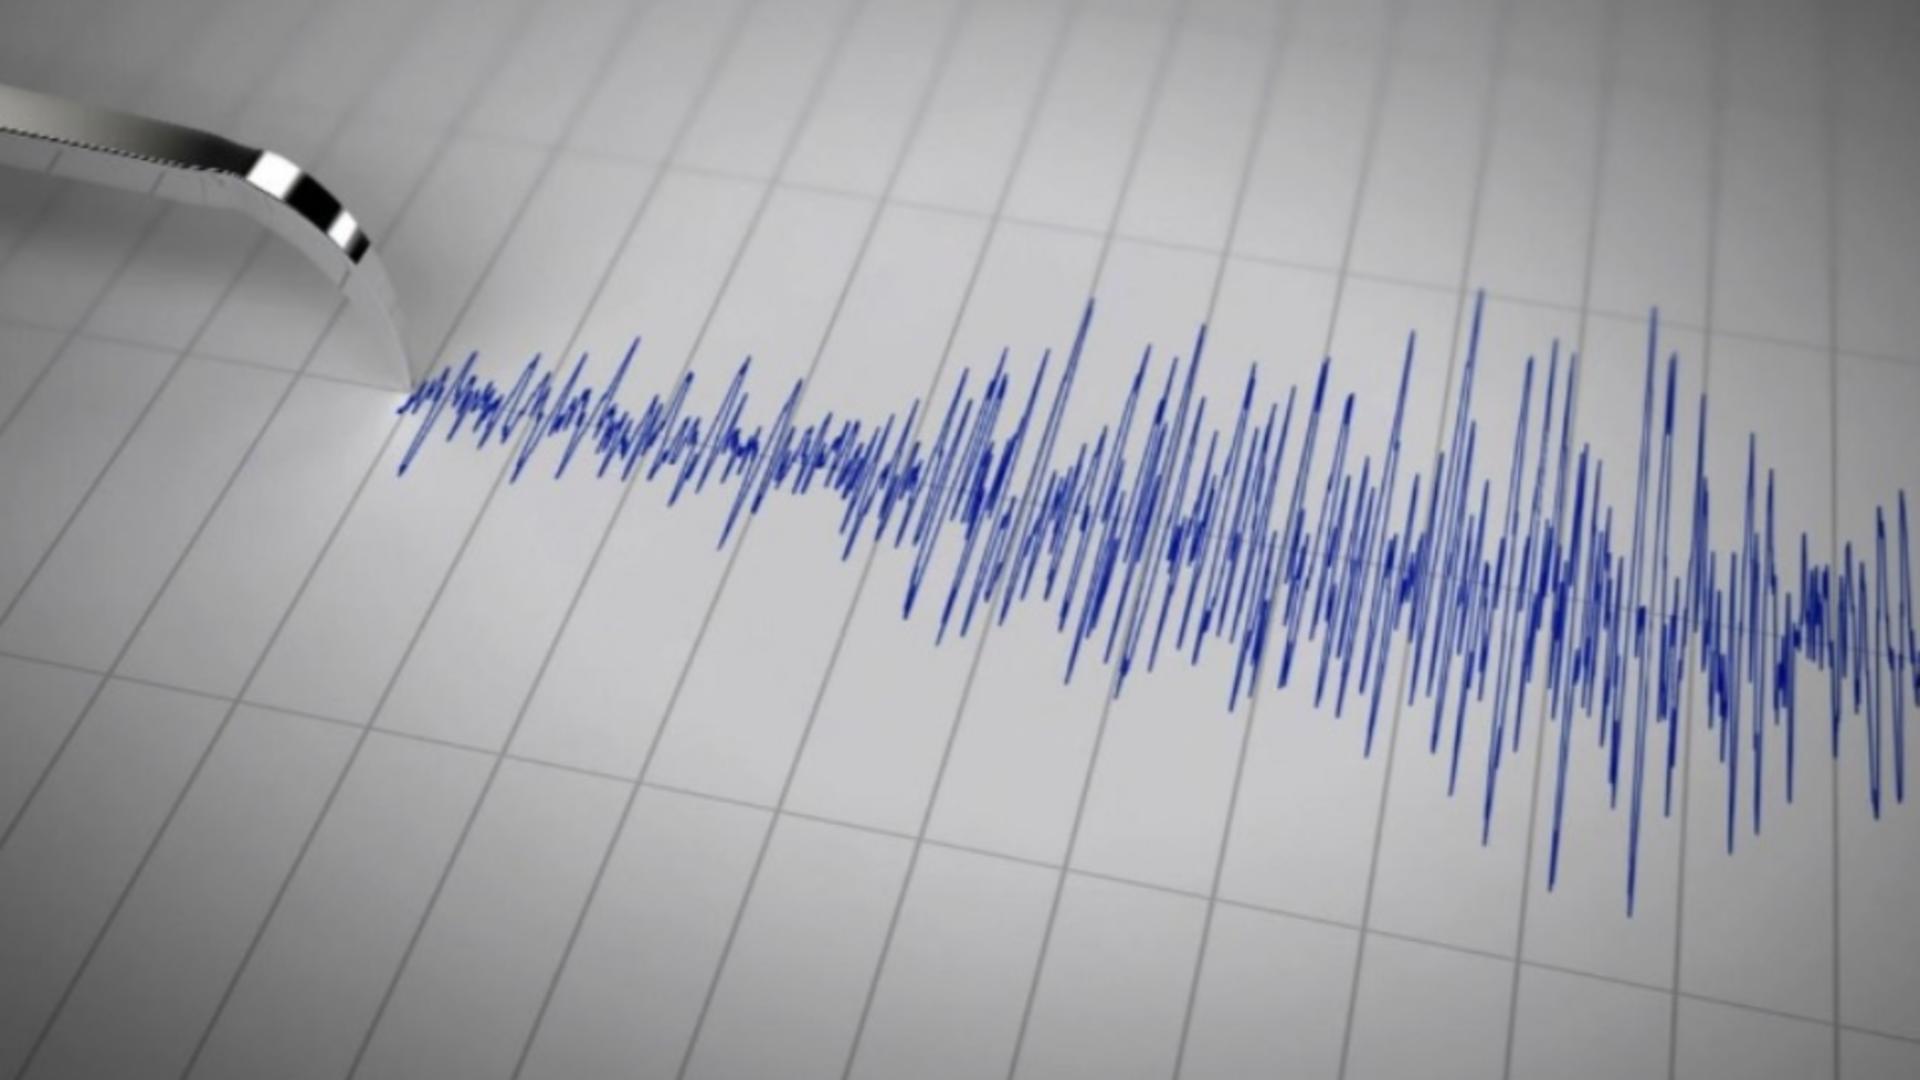 Cutremur mare în România, miercuri dimineața. INFP anunță activitate seismică intensă